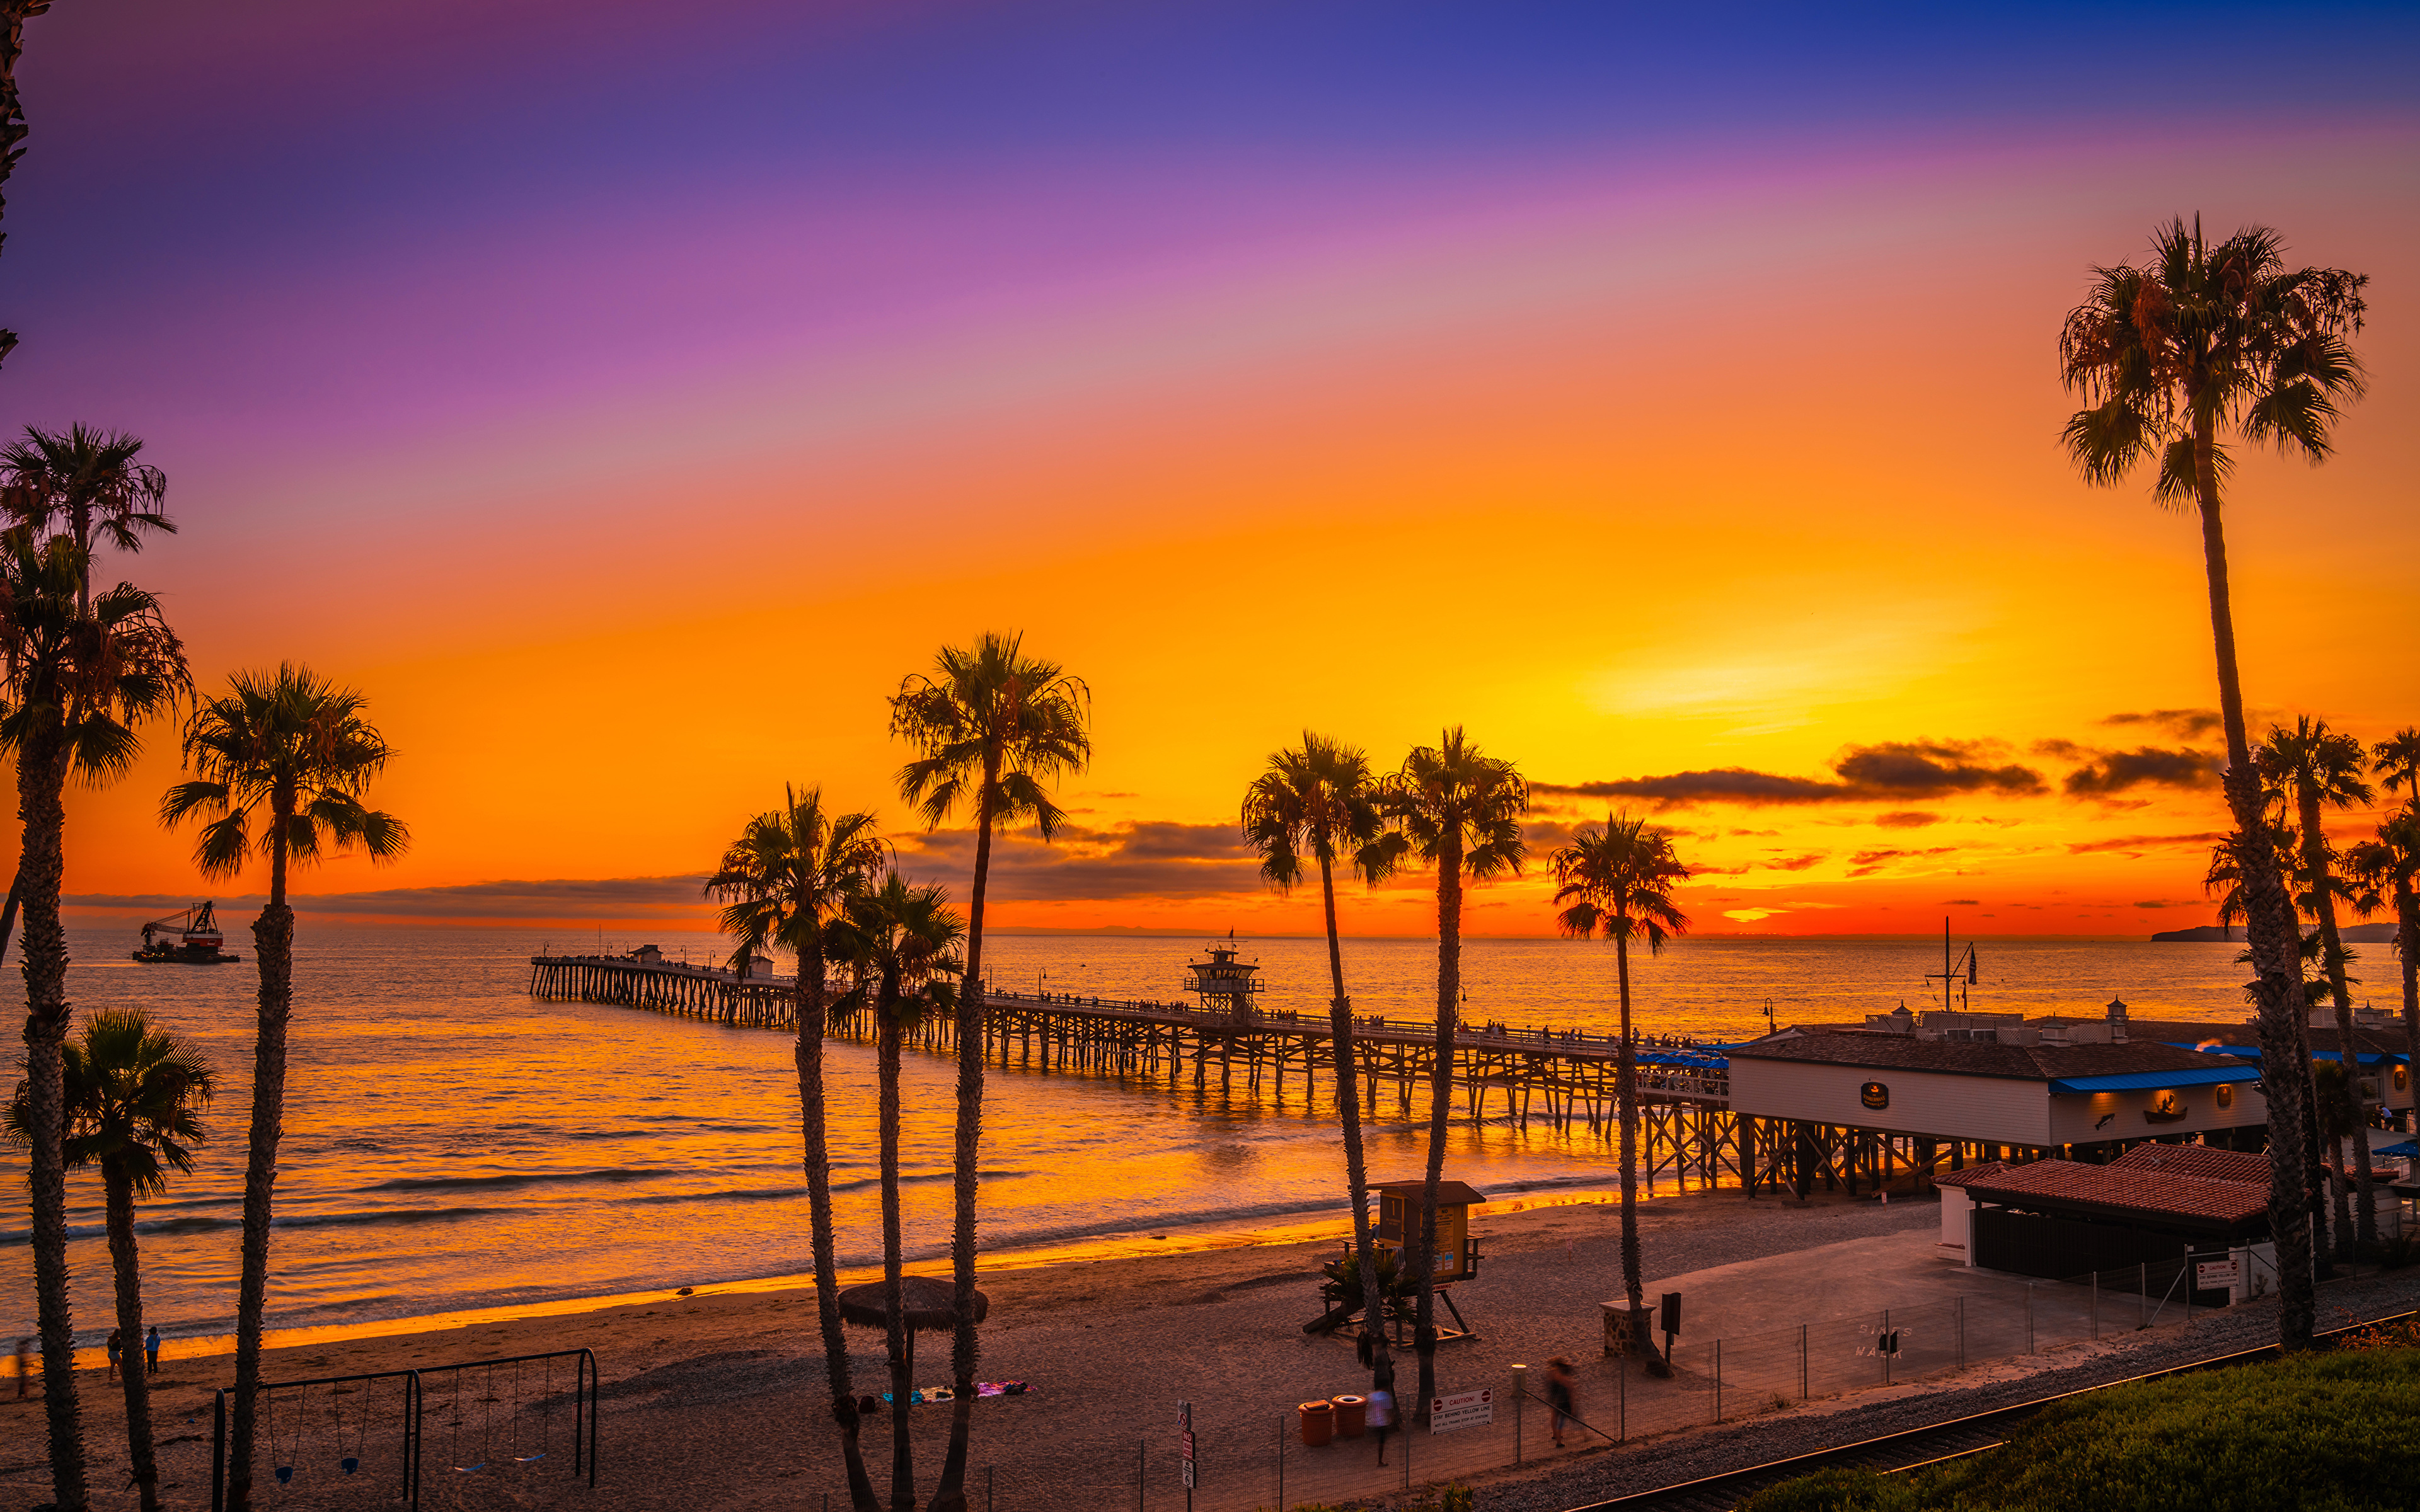 壁紙 3840x2400 アメリカ合衆国 海岸 朝焼けと日没 桟橋 San Clemente Beach カリフォルニア州 ヤシ ビーチ 自然 ダウンロード 写真